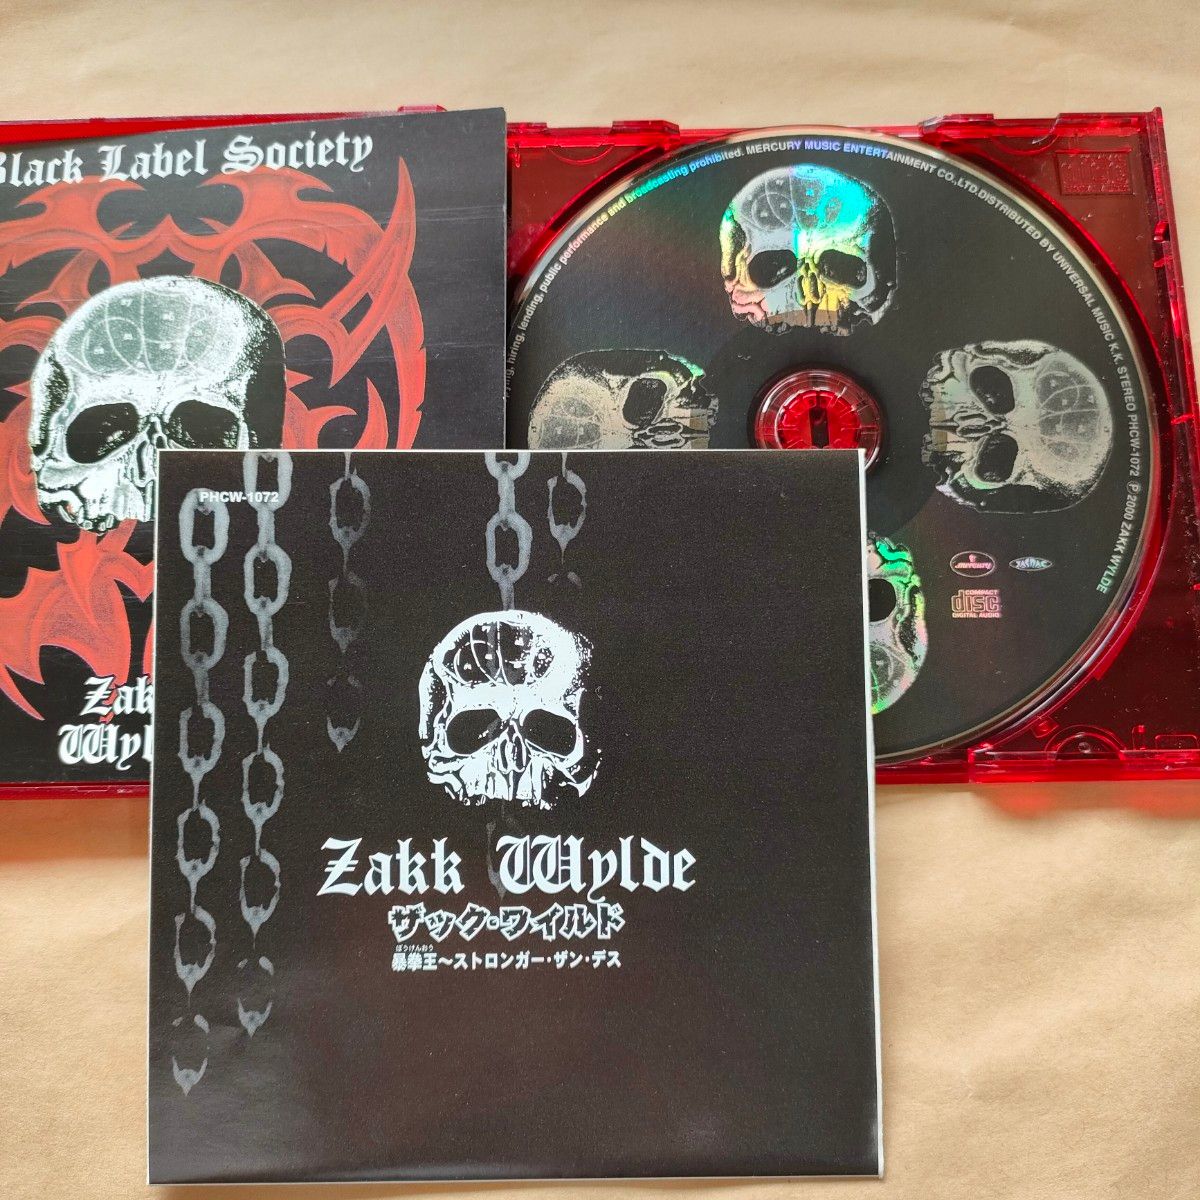 中古CD Black Label Society / Zakk Wylde ザック・ワイルド『暴拳王 Stro……』【1076】